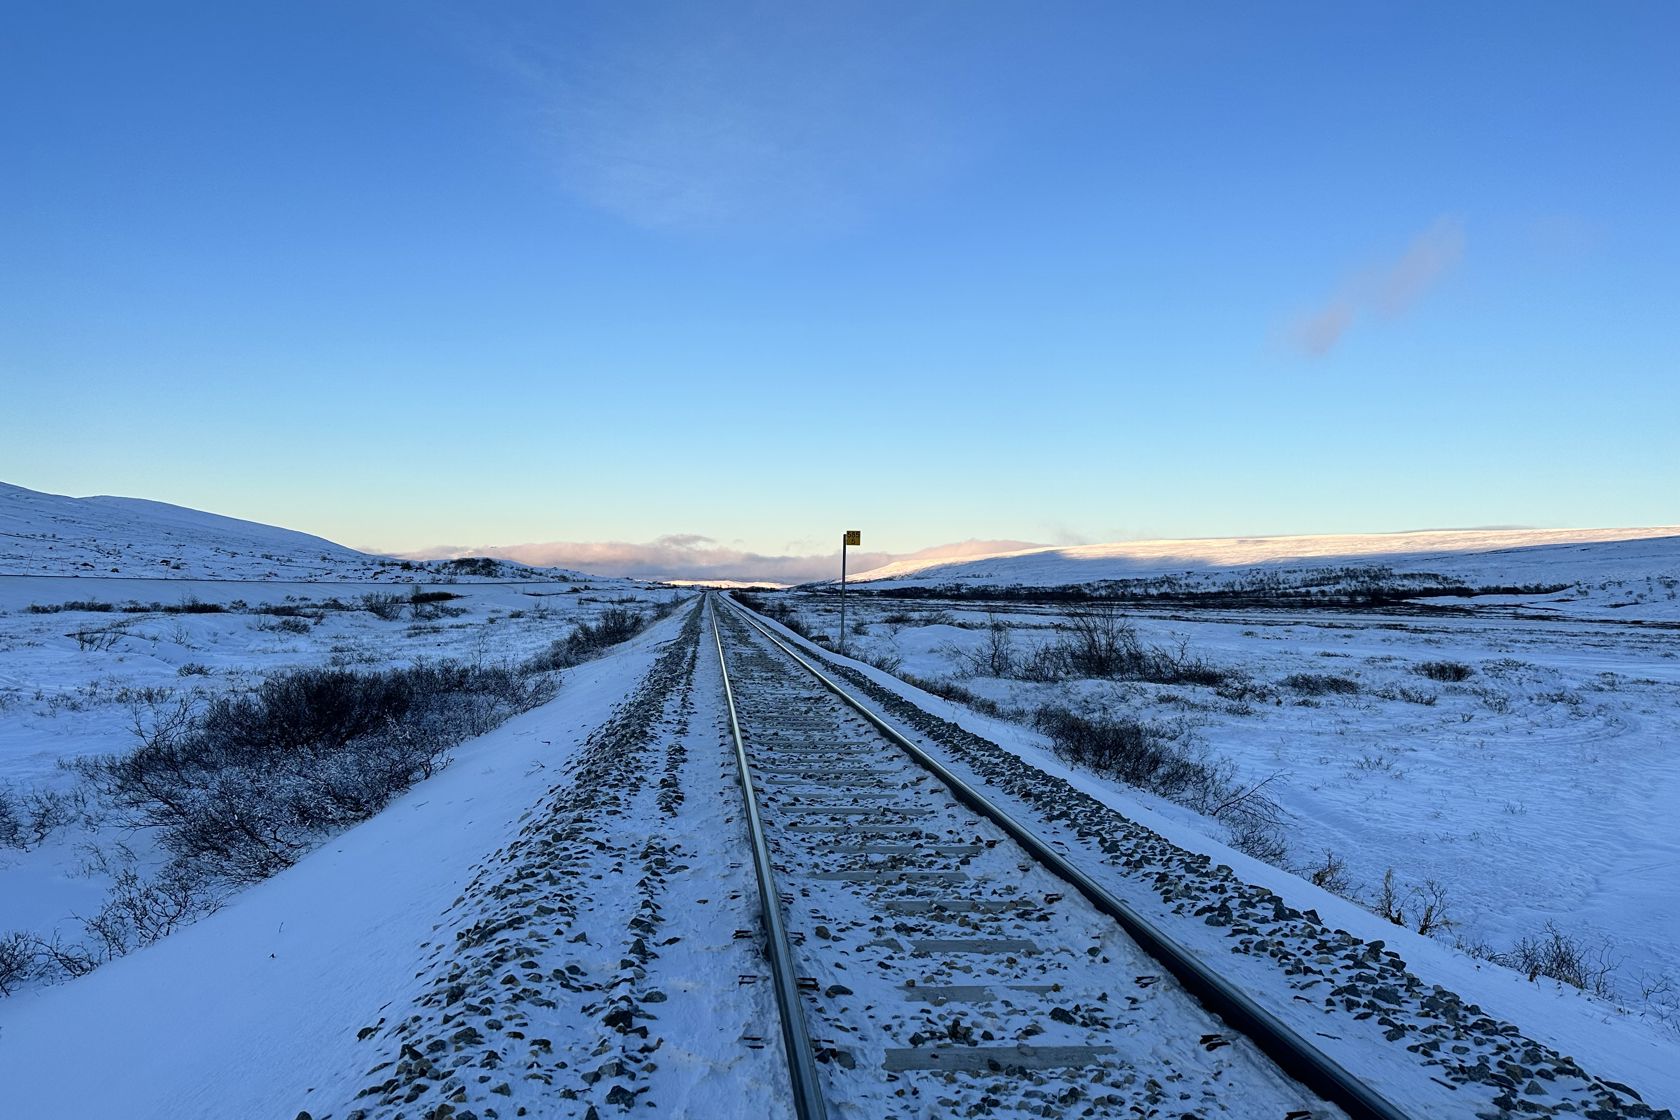 Spor på Nordlandsbanen ved Sukkertoppen på Saltfjellet med blå himmel i bakgrunnen